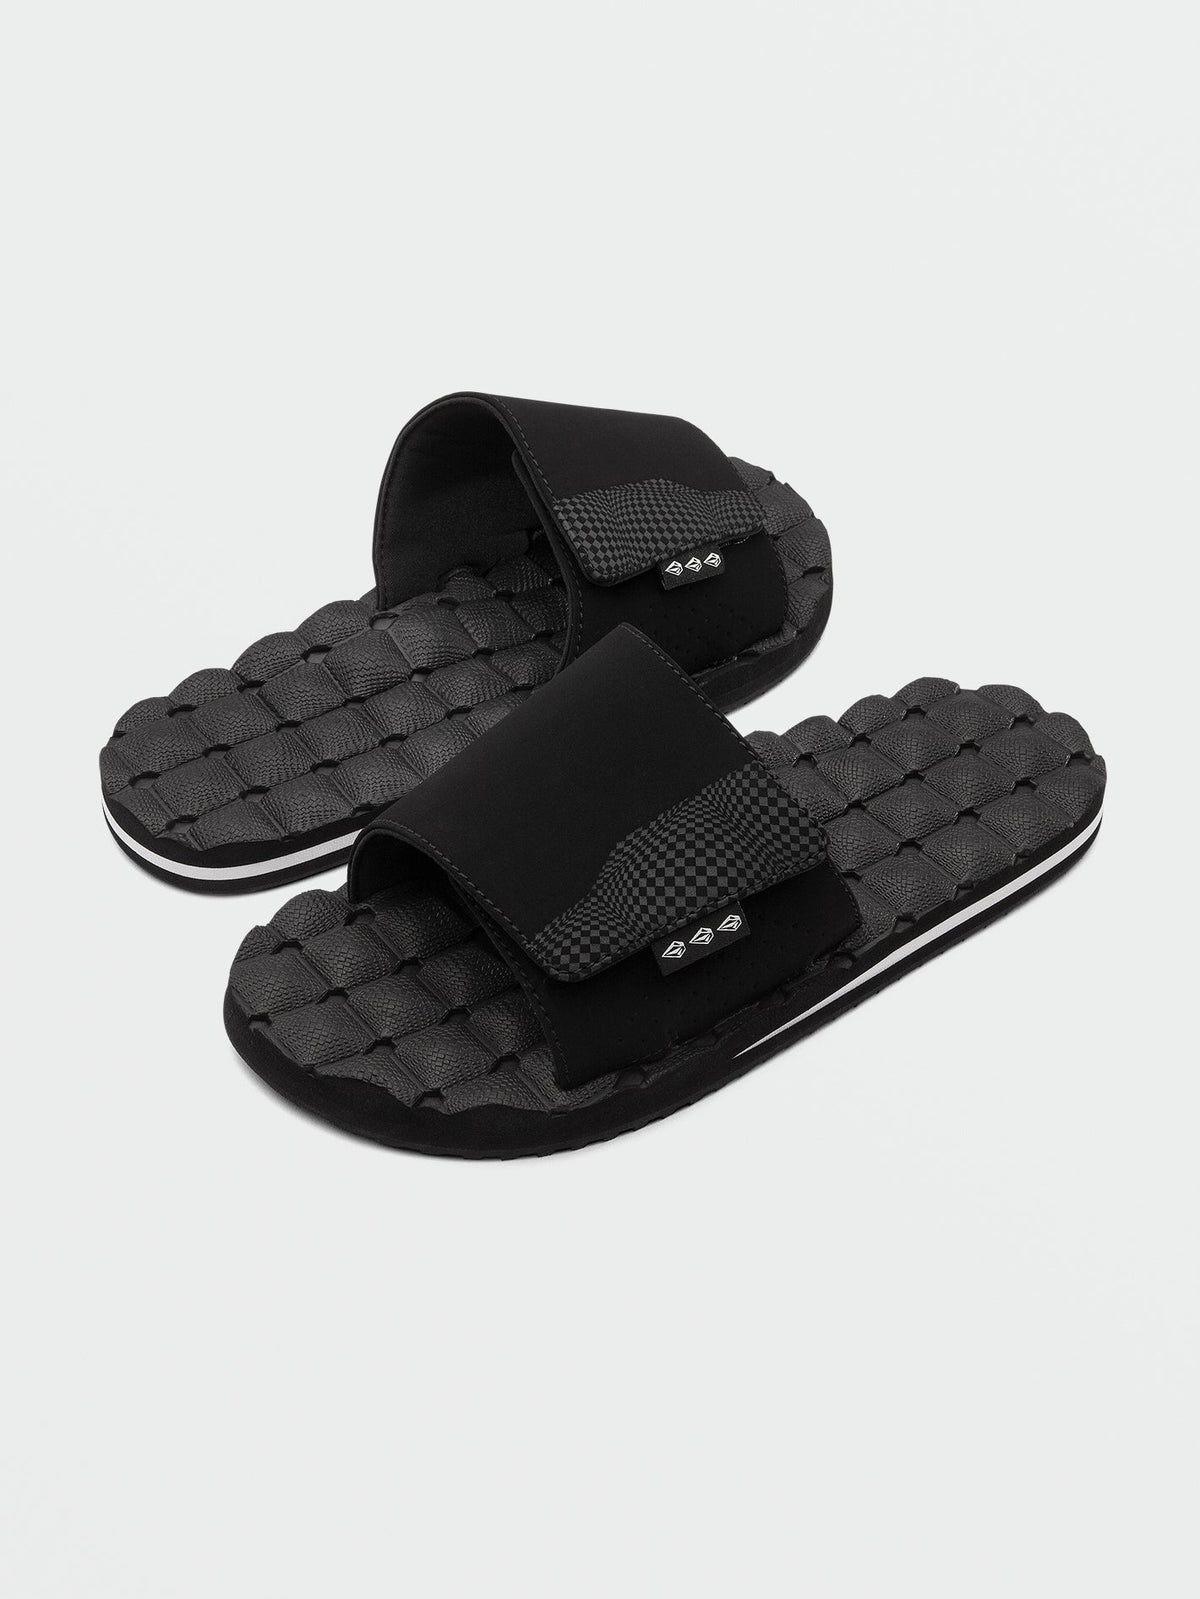 Volcom Recliner Slide Men's Sandals Black White